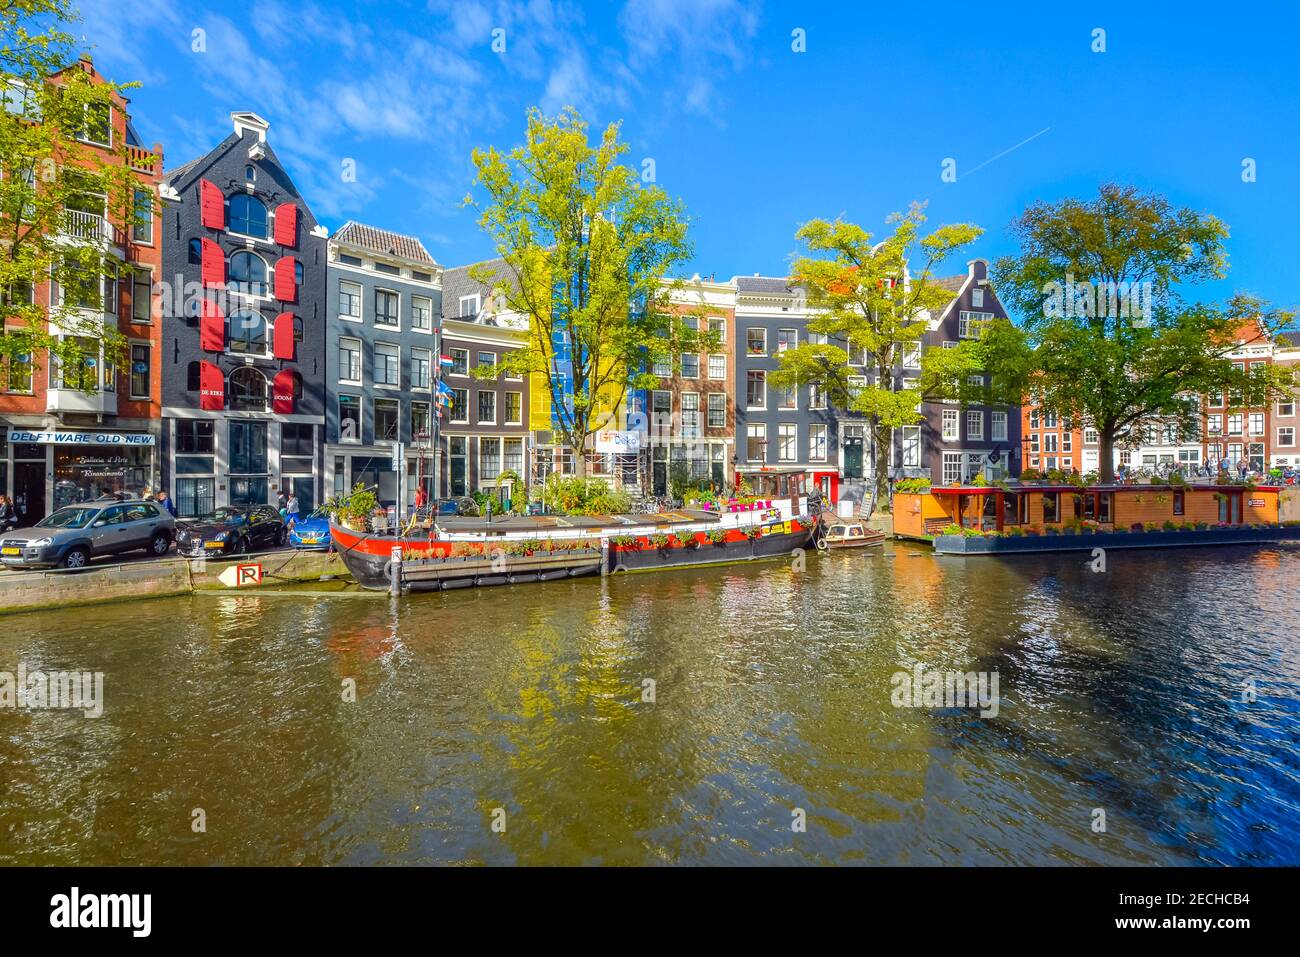 Le case galleggianti colorate costeggiano il canale di fronte alle case olandesi colorate in una giornata di sole all'inizio dell'autunno ad Amsterdam, Paesi Bassi Foto Stock